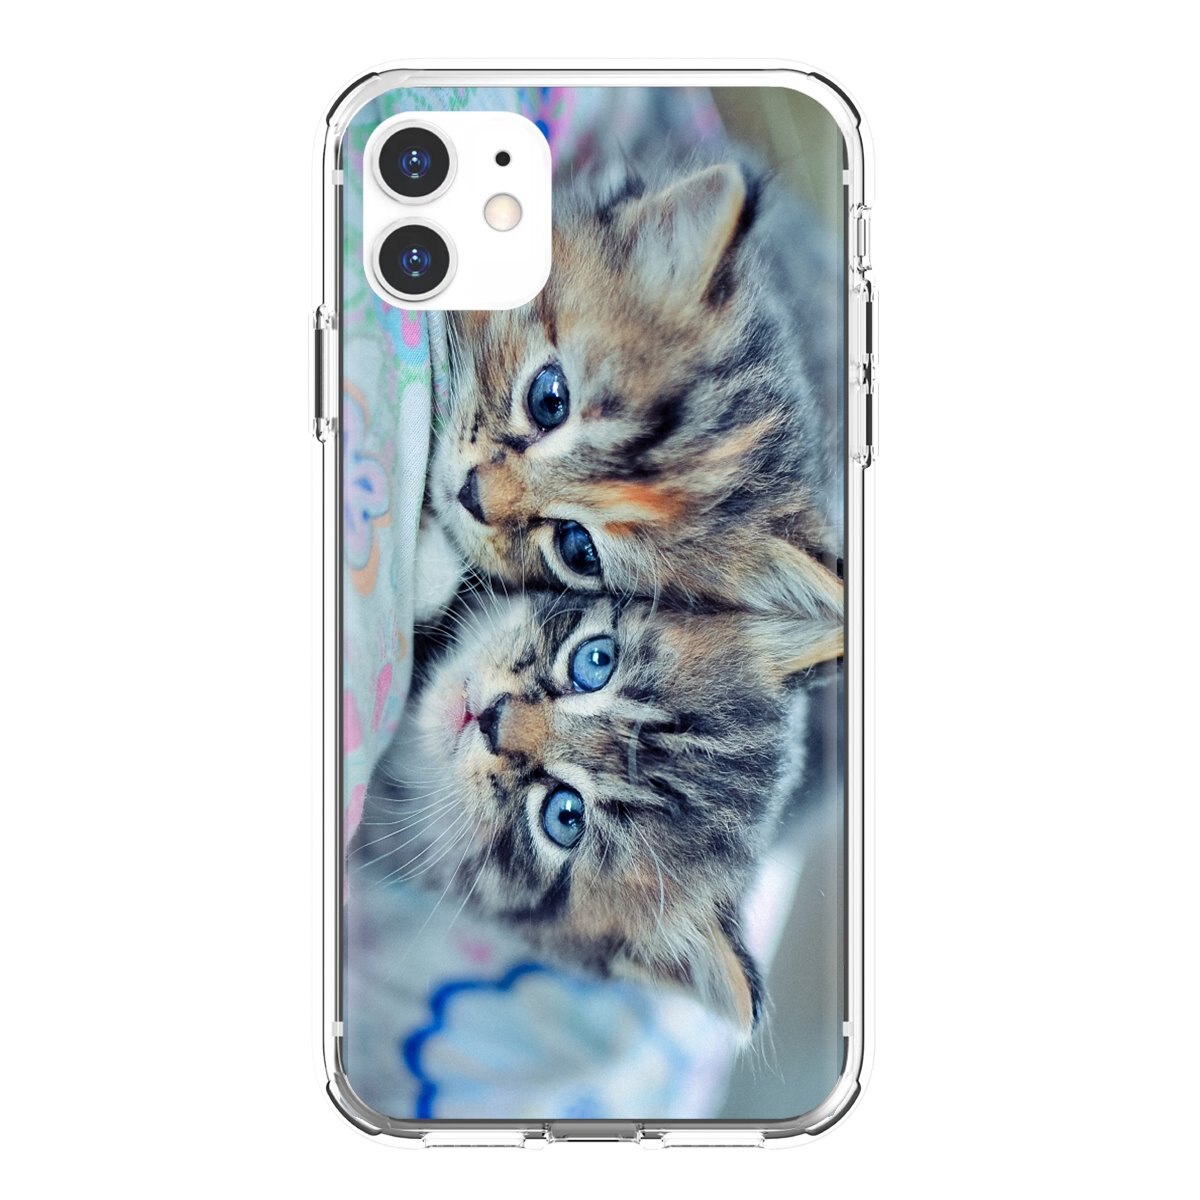 fond d'écran untuk iphone 6,chat,félidés,chaton,chats de petite à moyenne taille,chat tigré